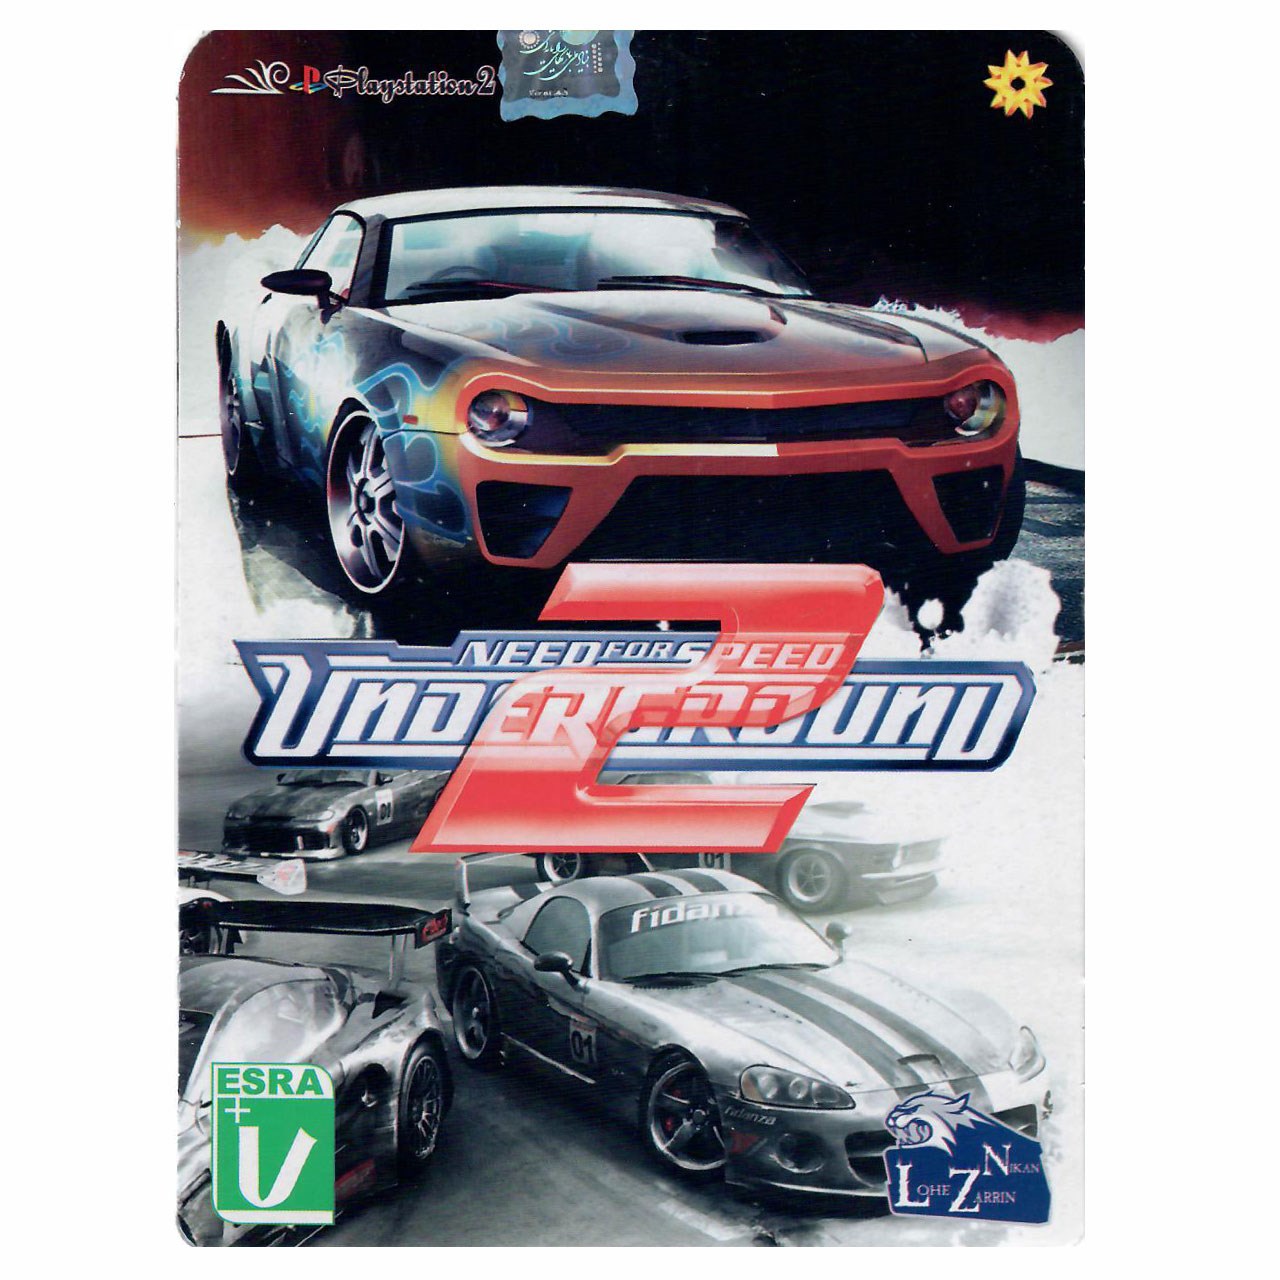 نقد و بررسی بازی مخصوص Need For Speed Underground 2 مخصوص PS2 توسط خریداران